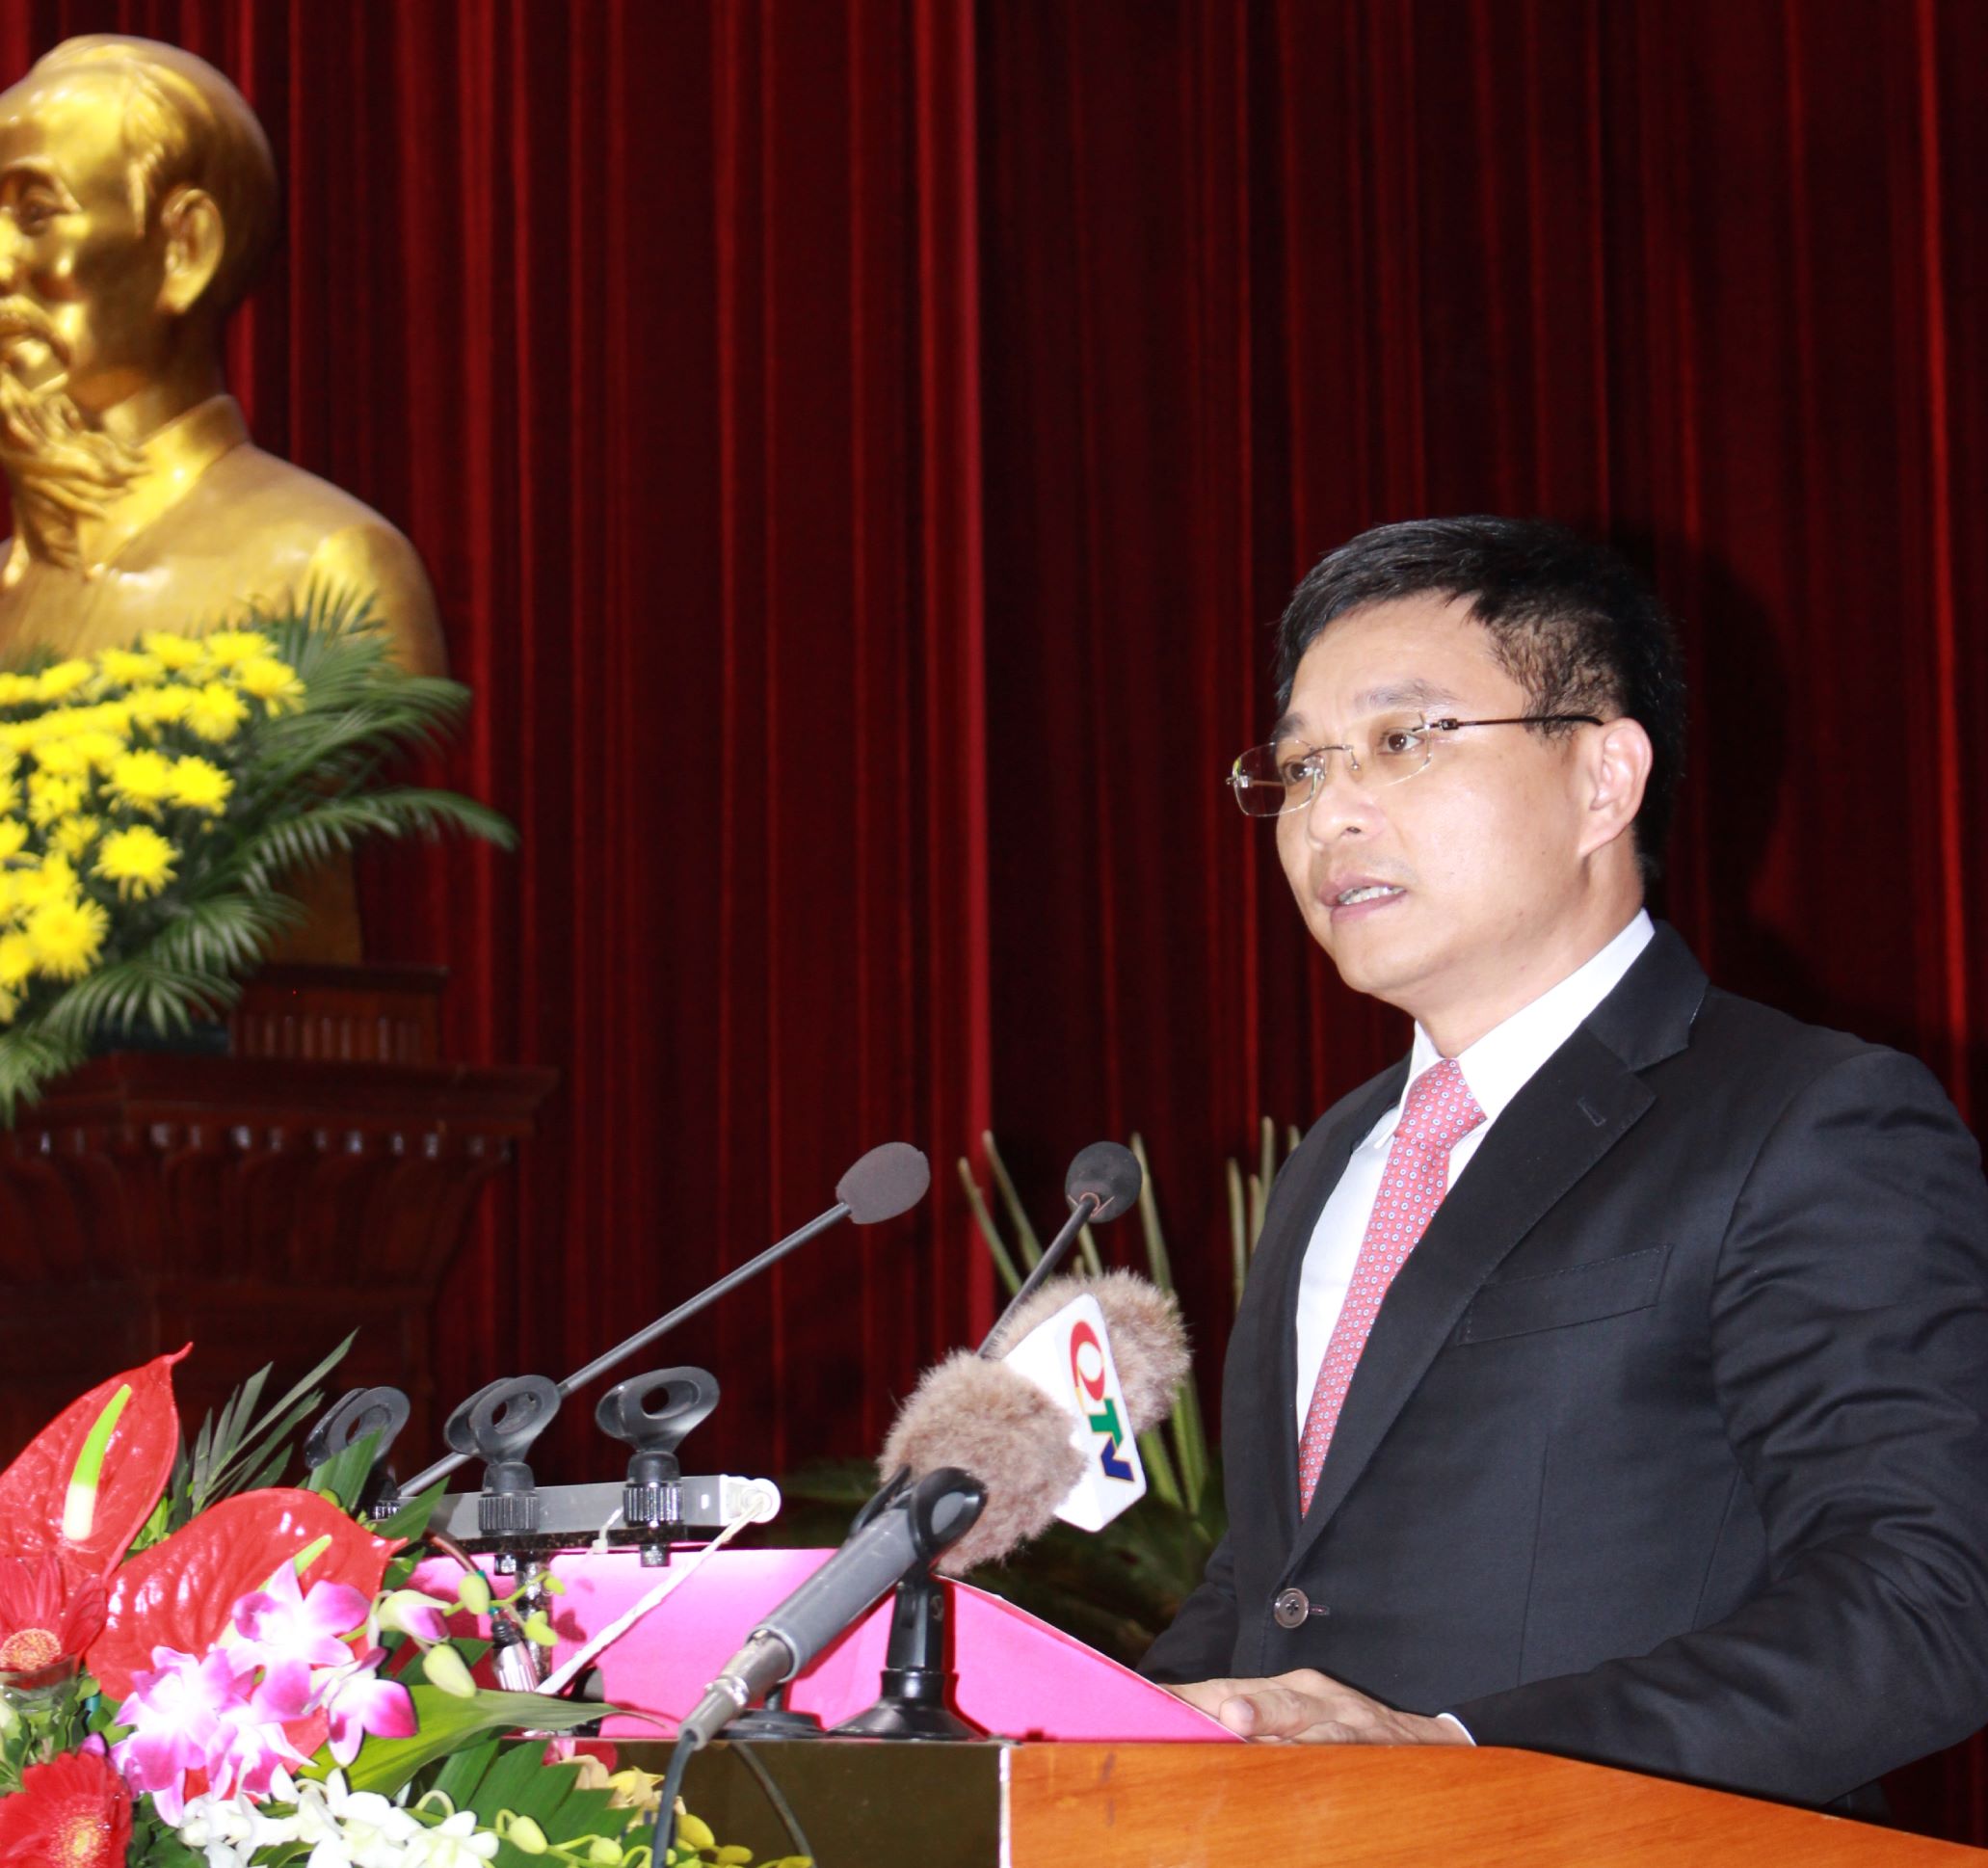 Tân Chủ tịch UBND tỉnh Quảng Ninh, ông Nguyễn Văn Thắng, Ủy viên dự khuyết Trung ương Đảng, Phó Bí thư Tỉnh ủy Quảng Ninh phát biểu sau khi được bầu. Ảnh Thanh Tân.